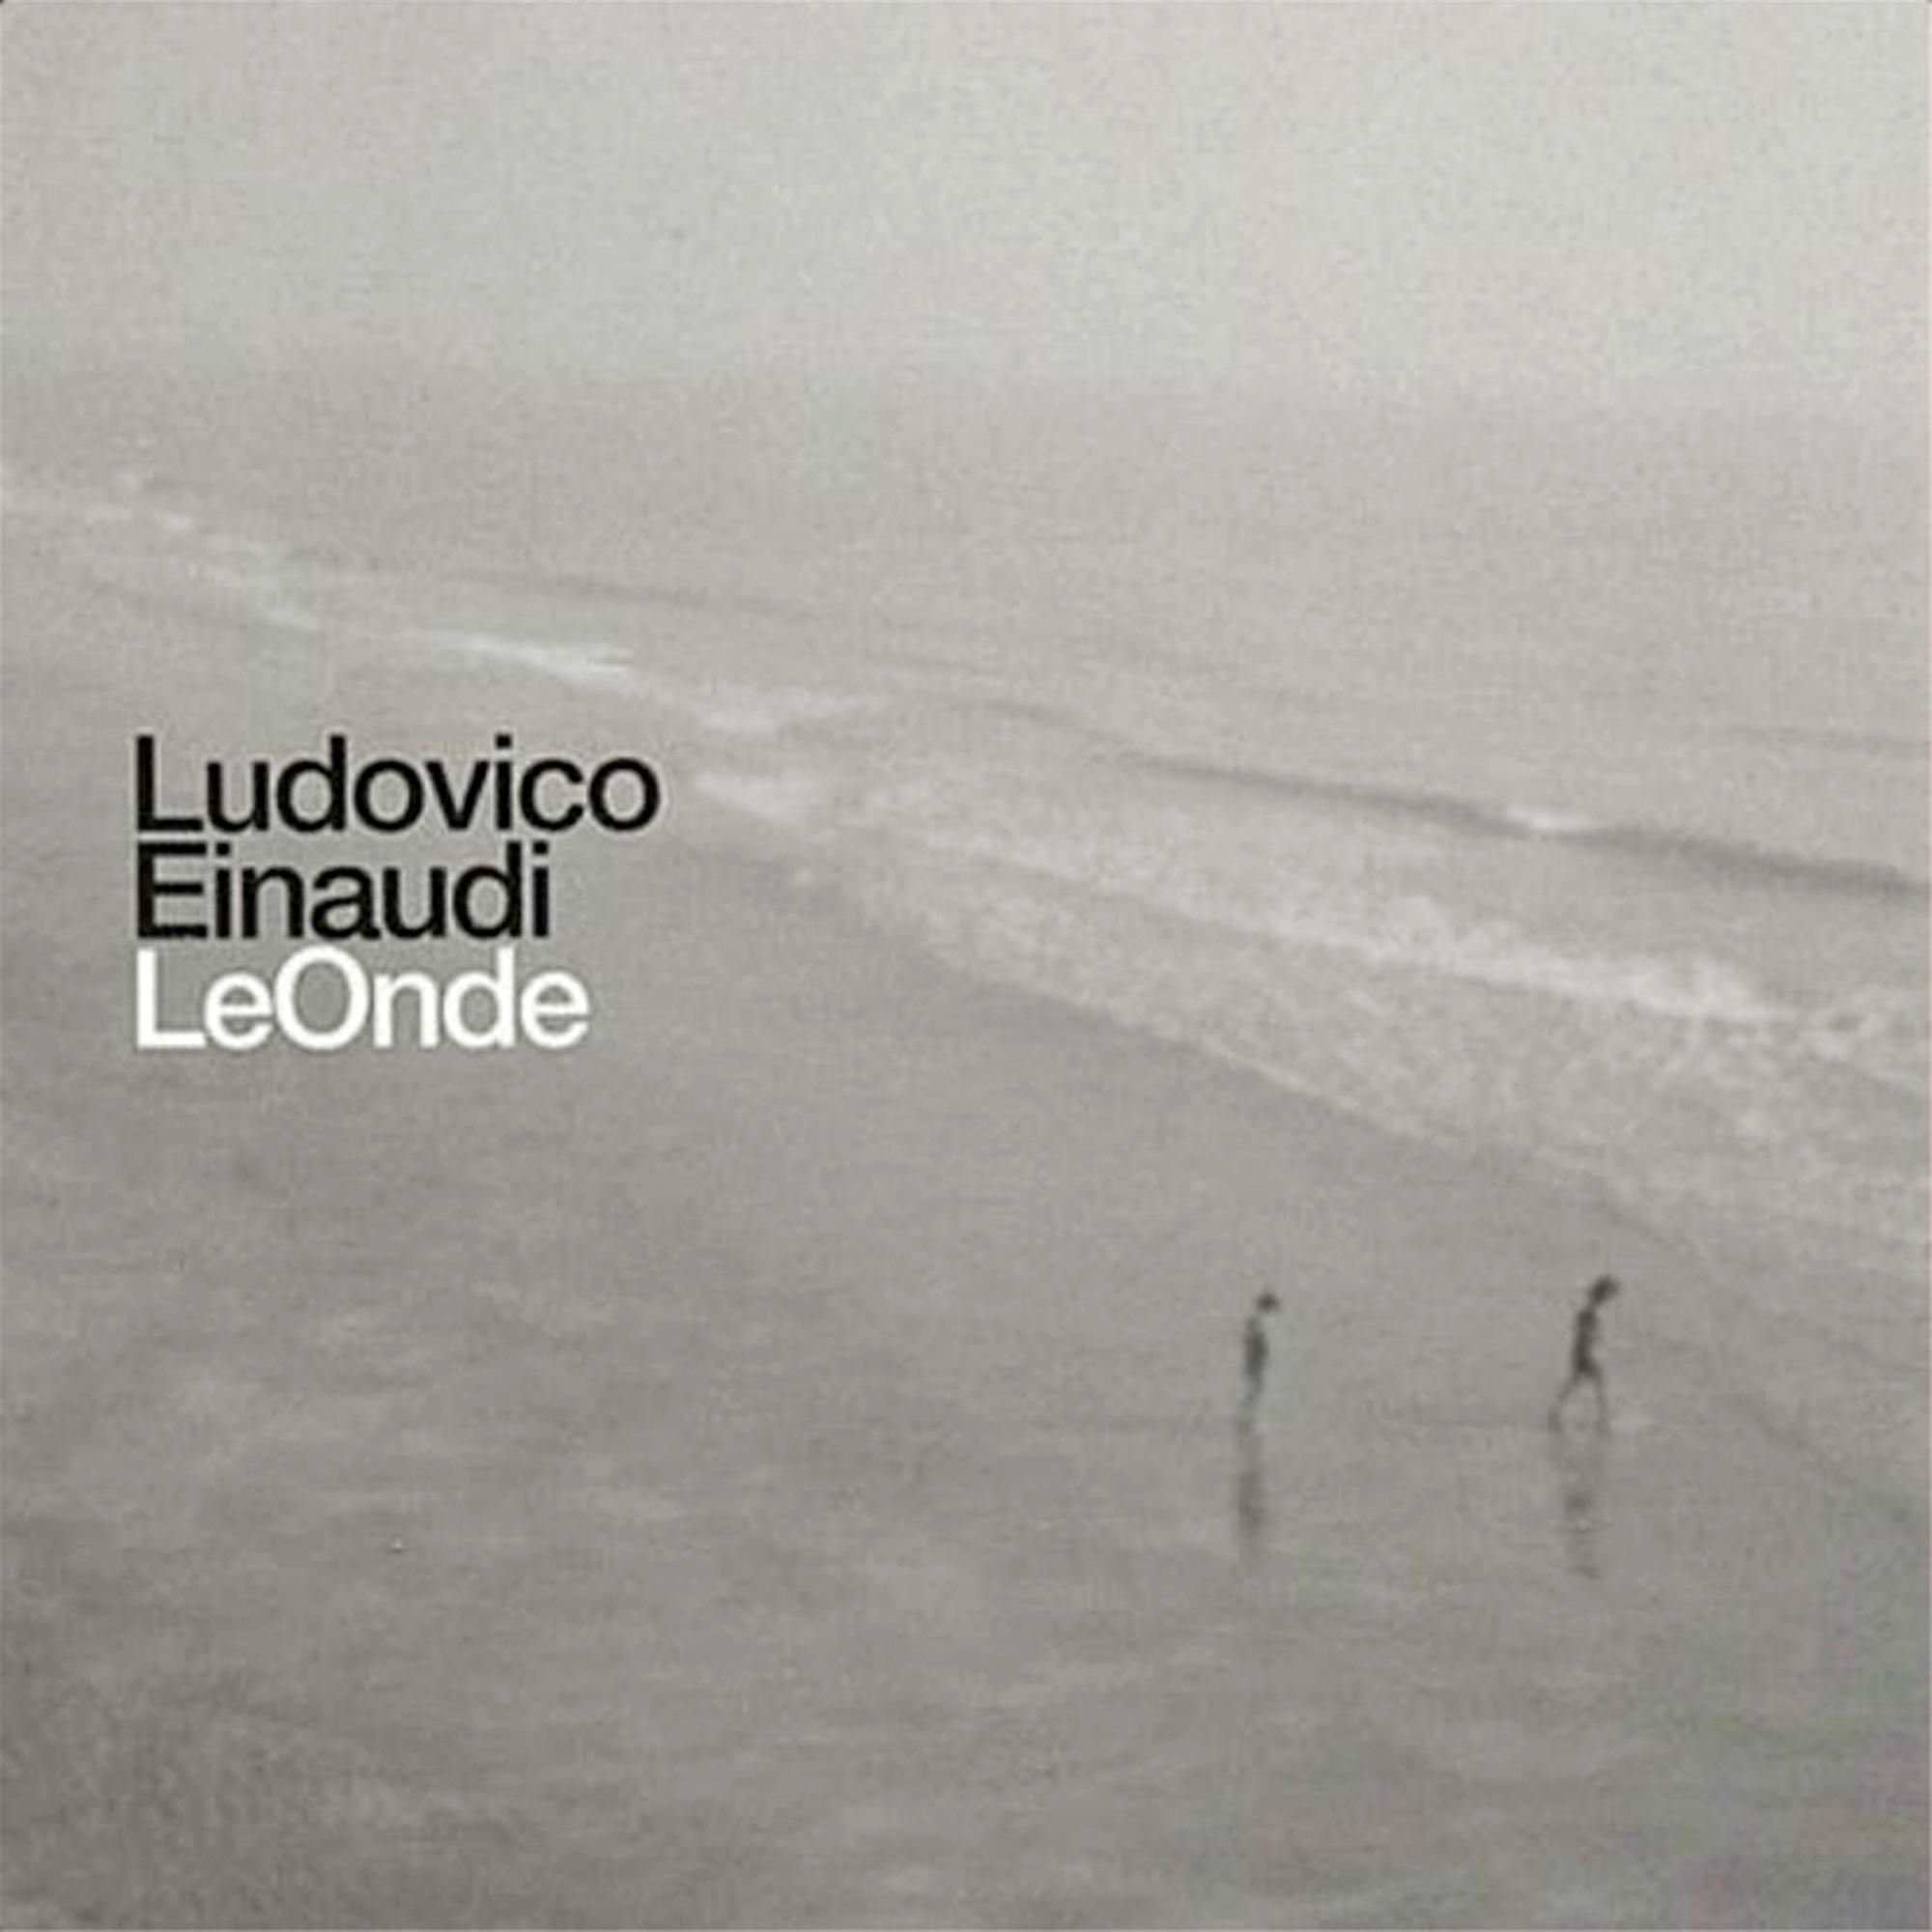 Einaudi (Vinyl) Onde Ludovico Le - -